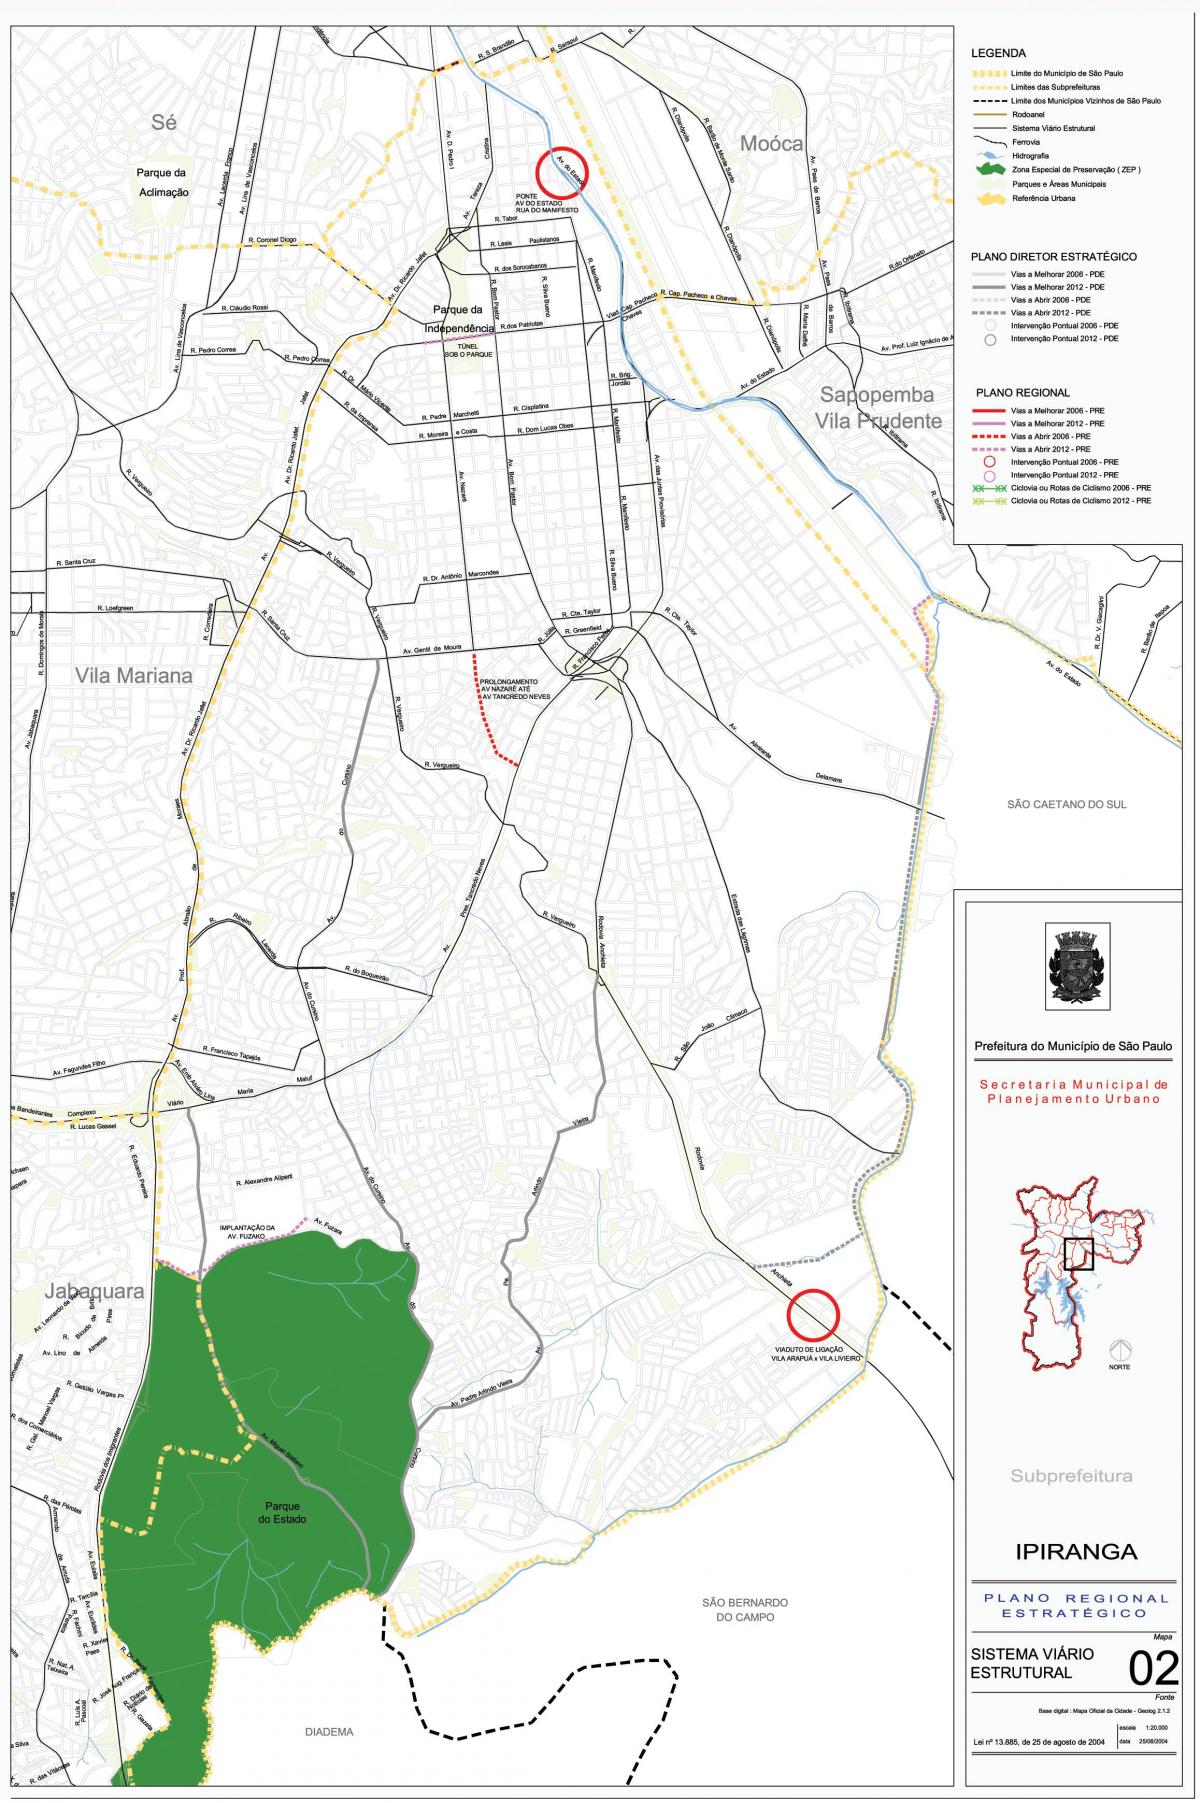 Mapa Ipiranga São Paulo - Silnice